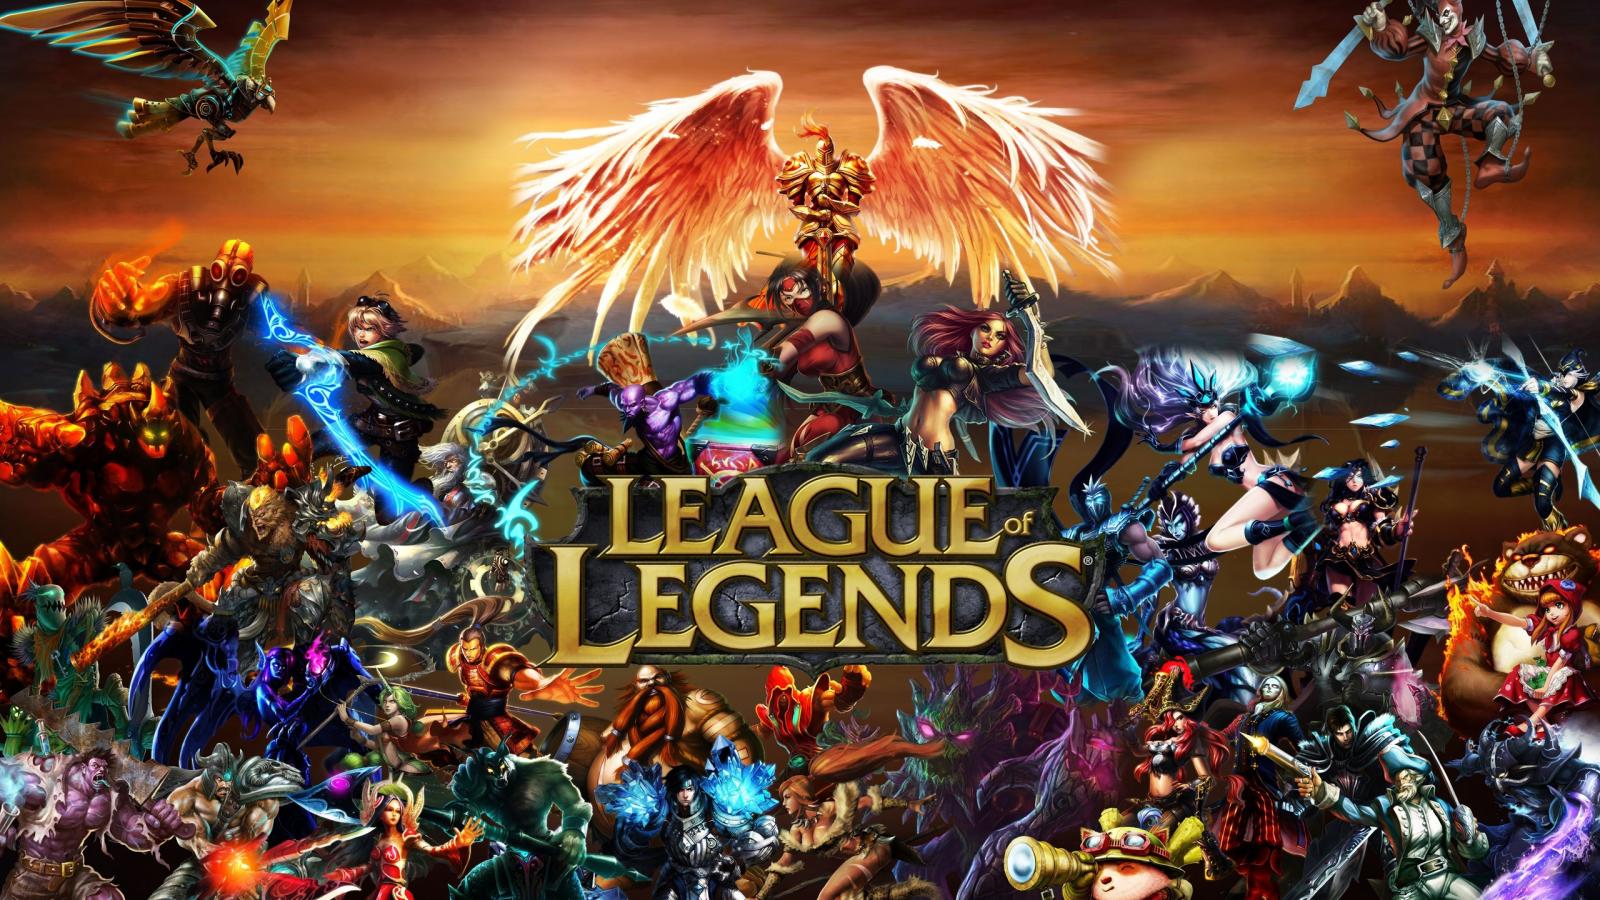 "League of Legends", désormais en série sur Netflix